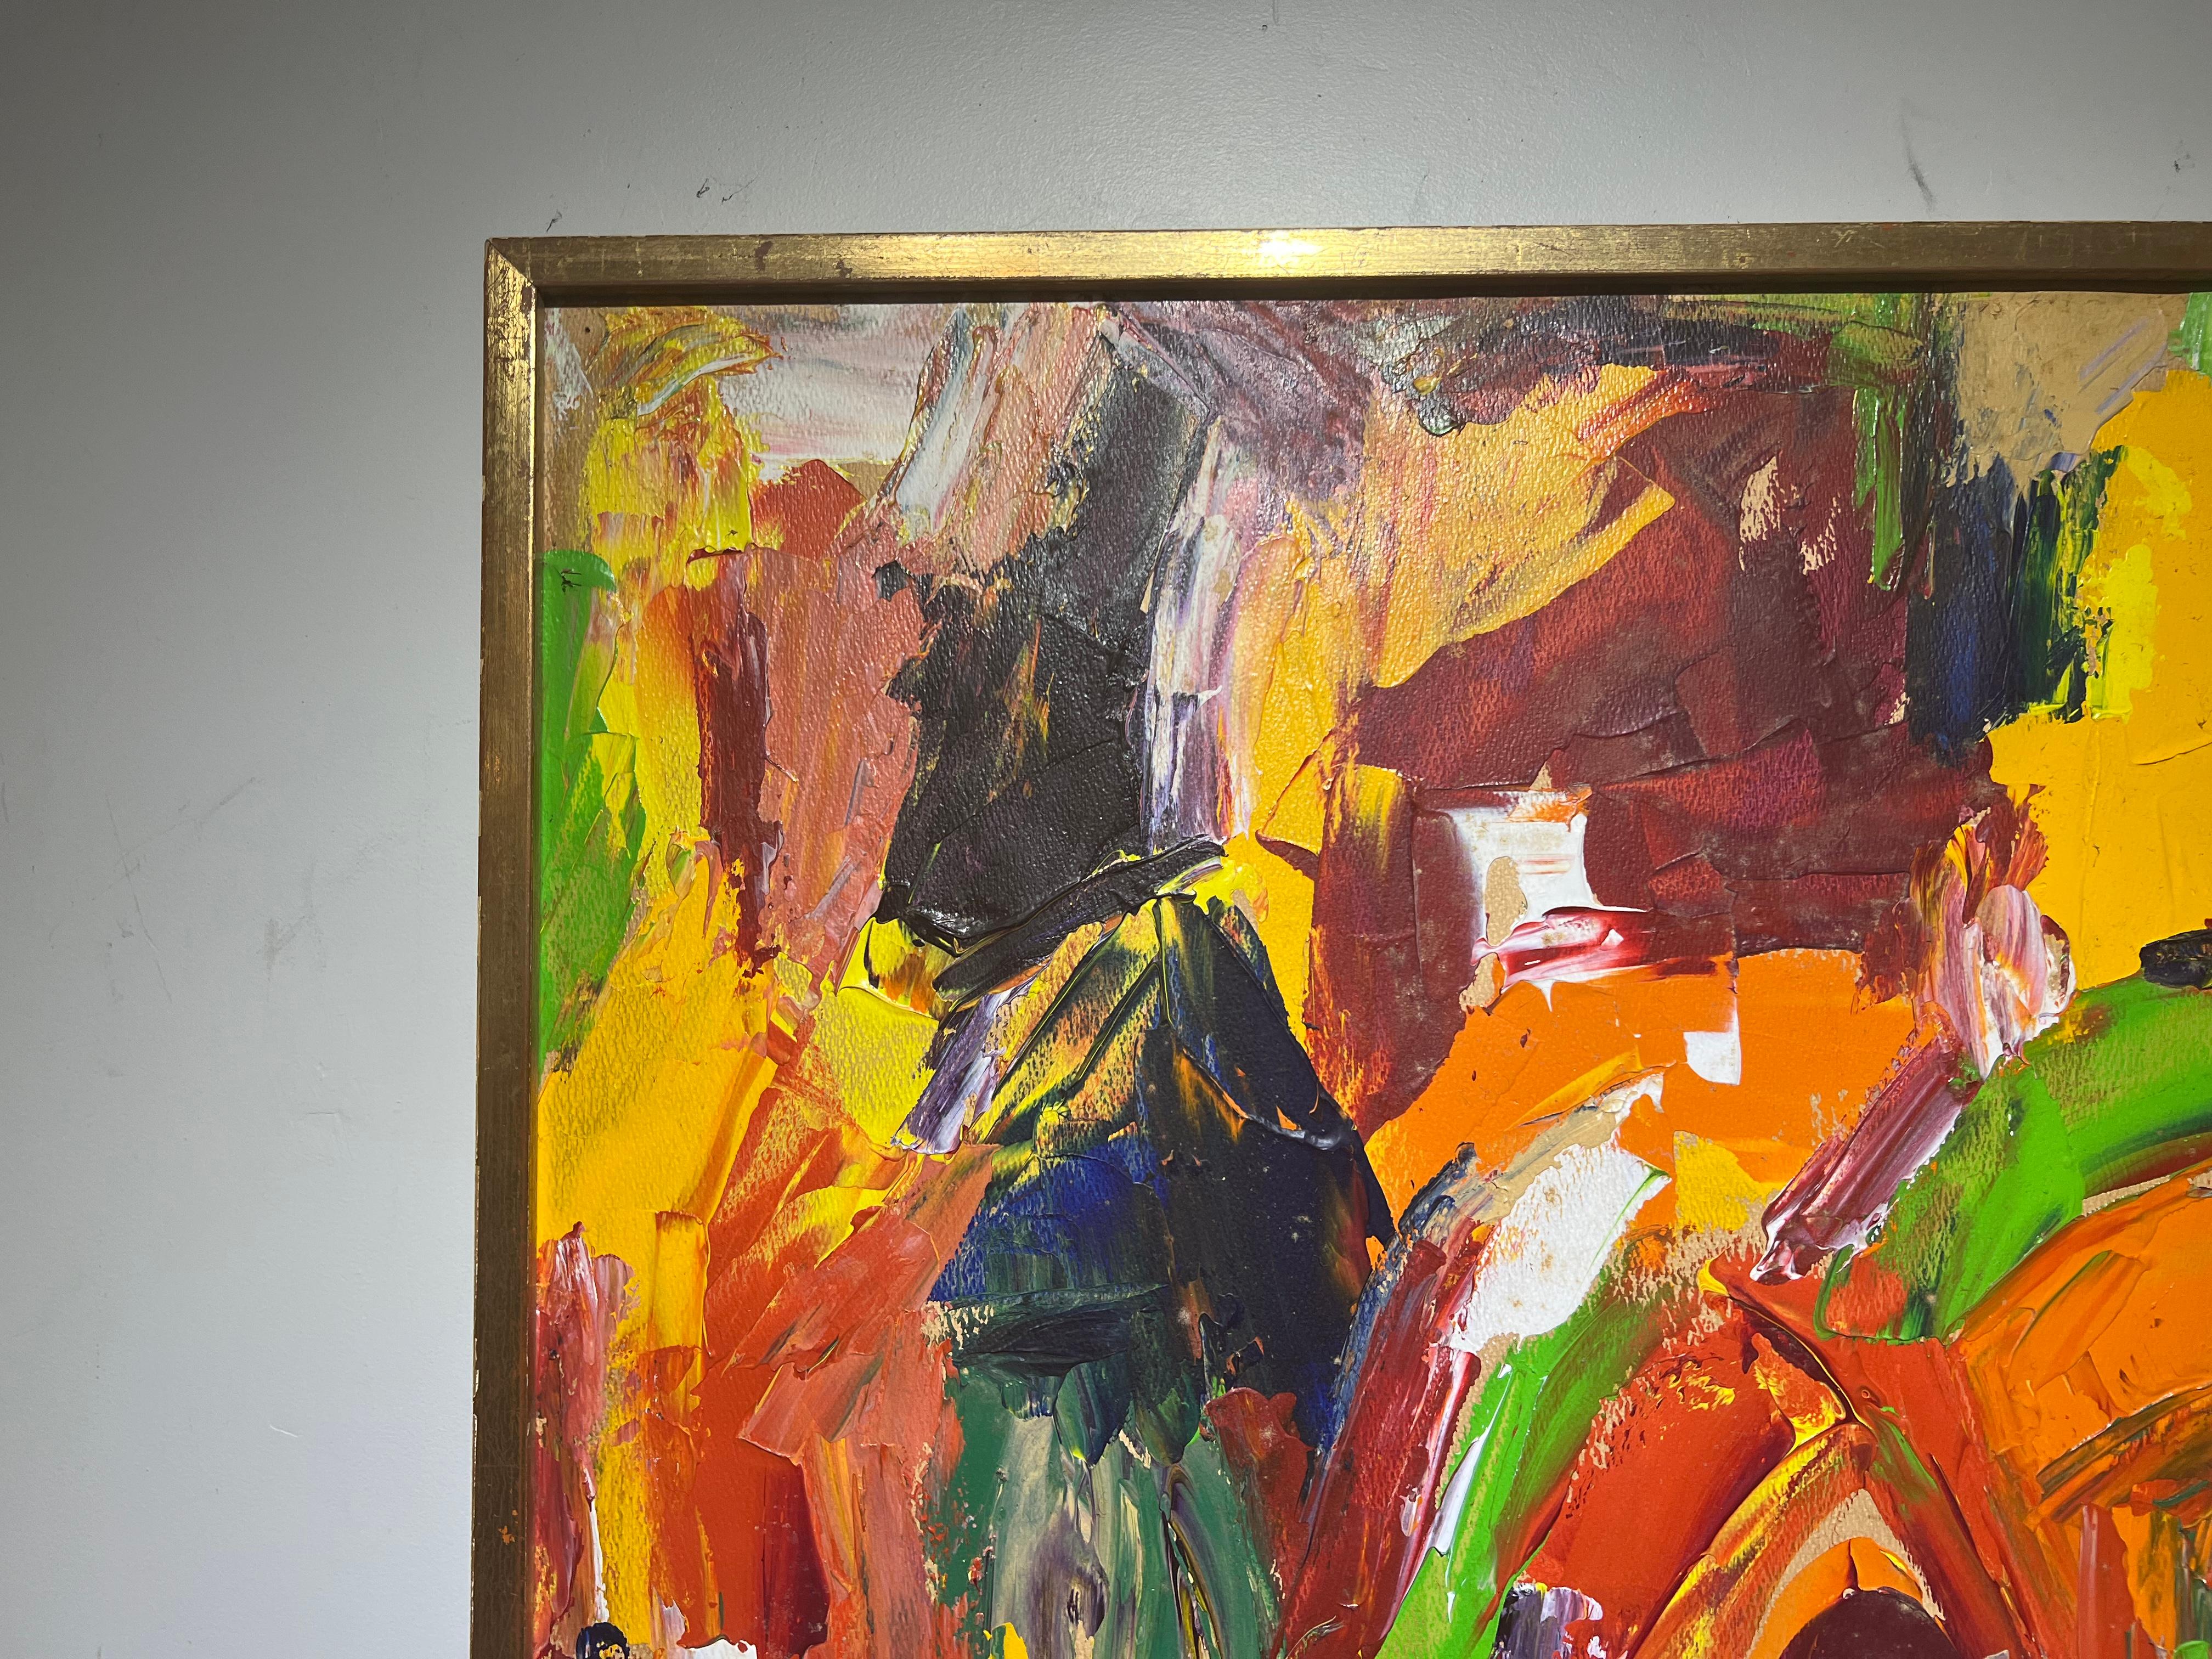 Hilda Epner, née en 1929, est une peintre abstraite américaine originaire de Rockland County New York.

A vendre, une belle peinture abstraite aux couleurs vives datant de 1971.
 
Beaucoup de couleurs !

Les premiers travaux

Hilda Epner
Signé en